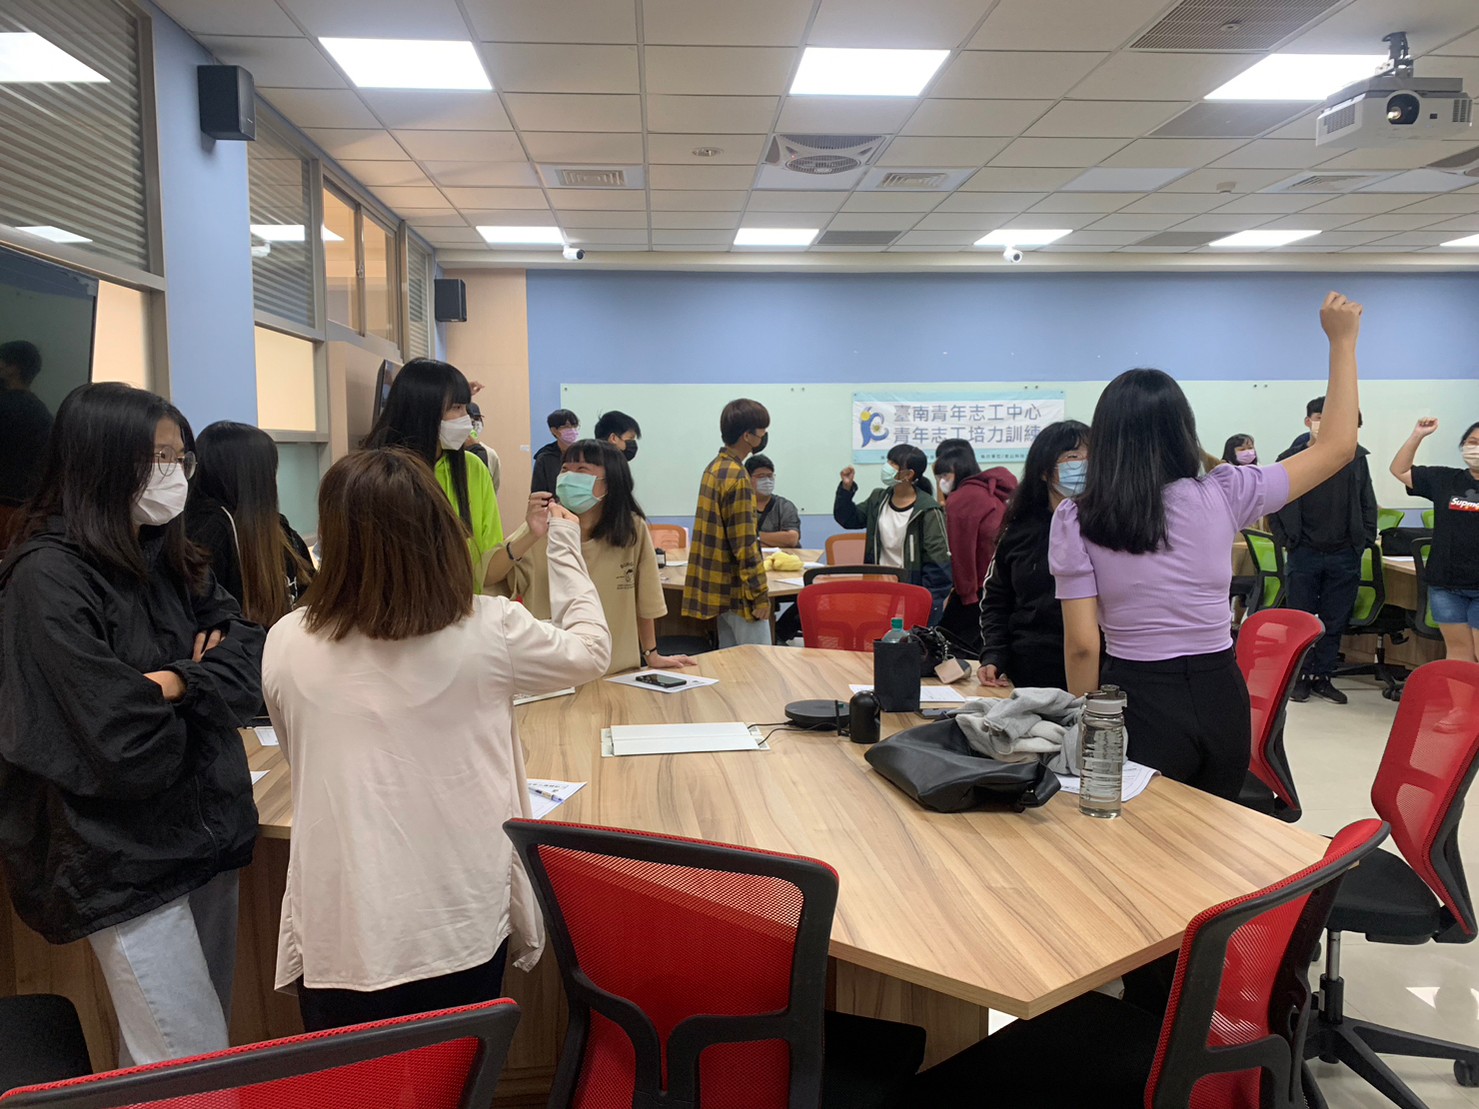 111/11/30媒合青年投入志願服務，台南青年志工中心專訪